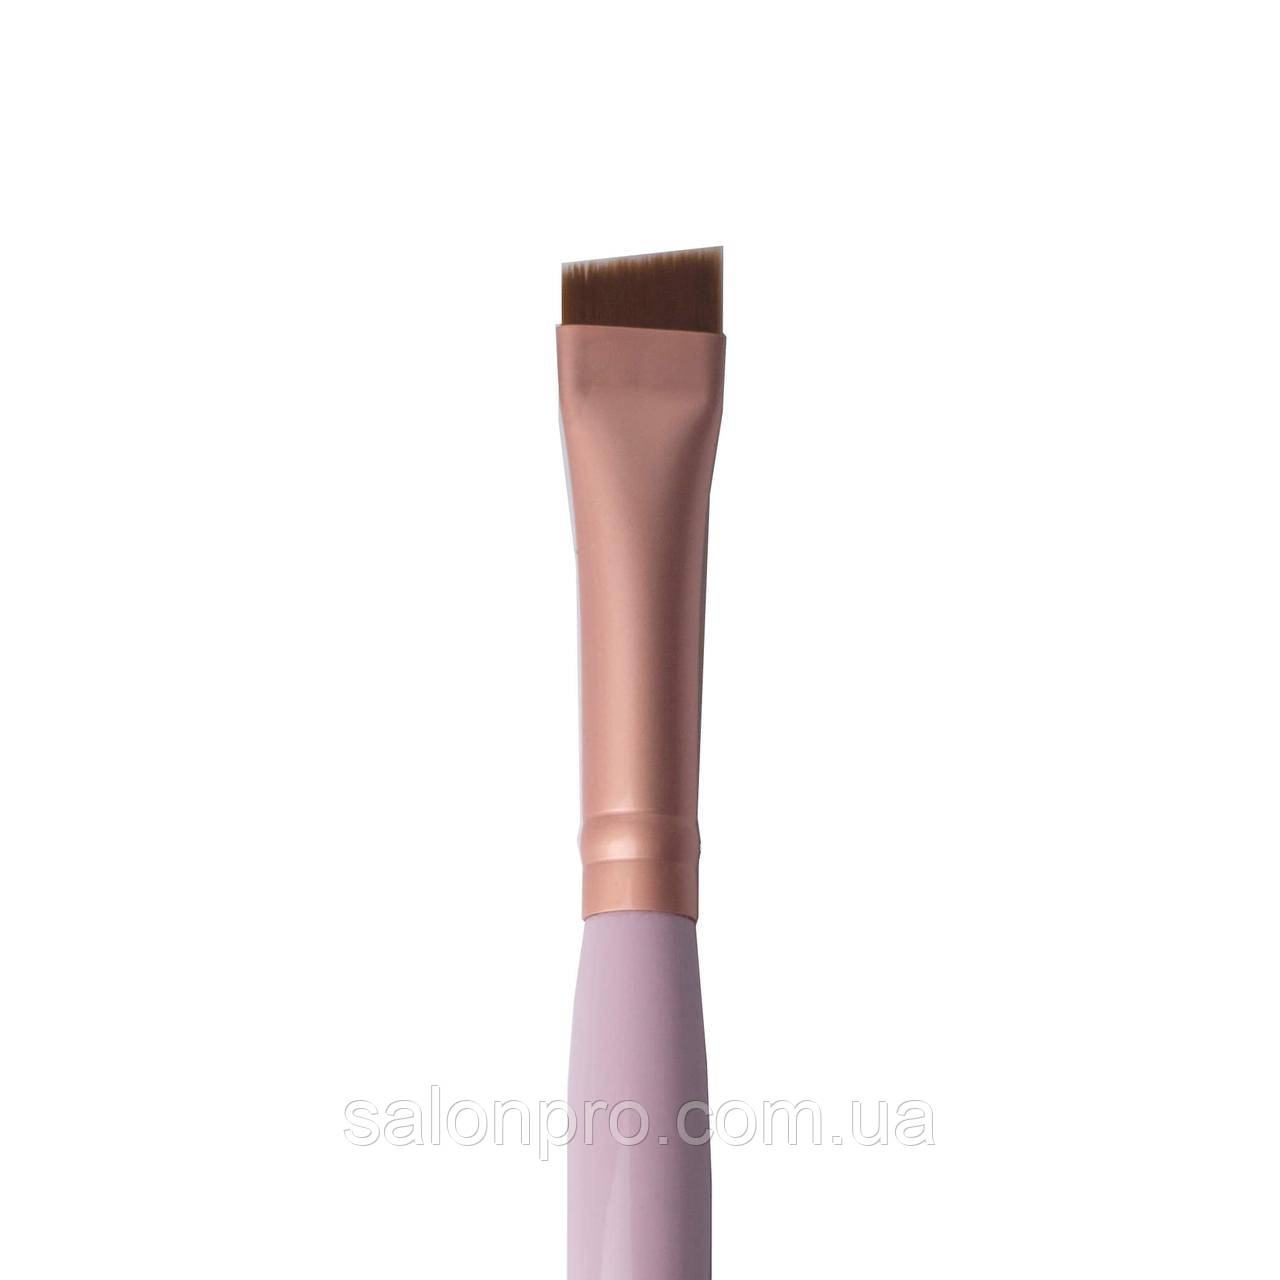 ZOLA пензлик широкий зі скосом для фарбування брів 02p, світло-рожевий